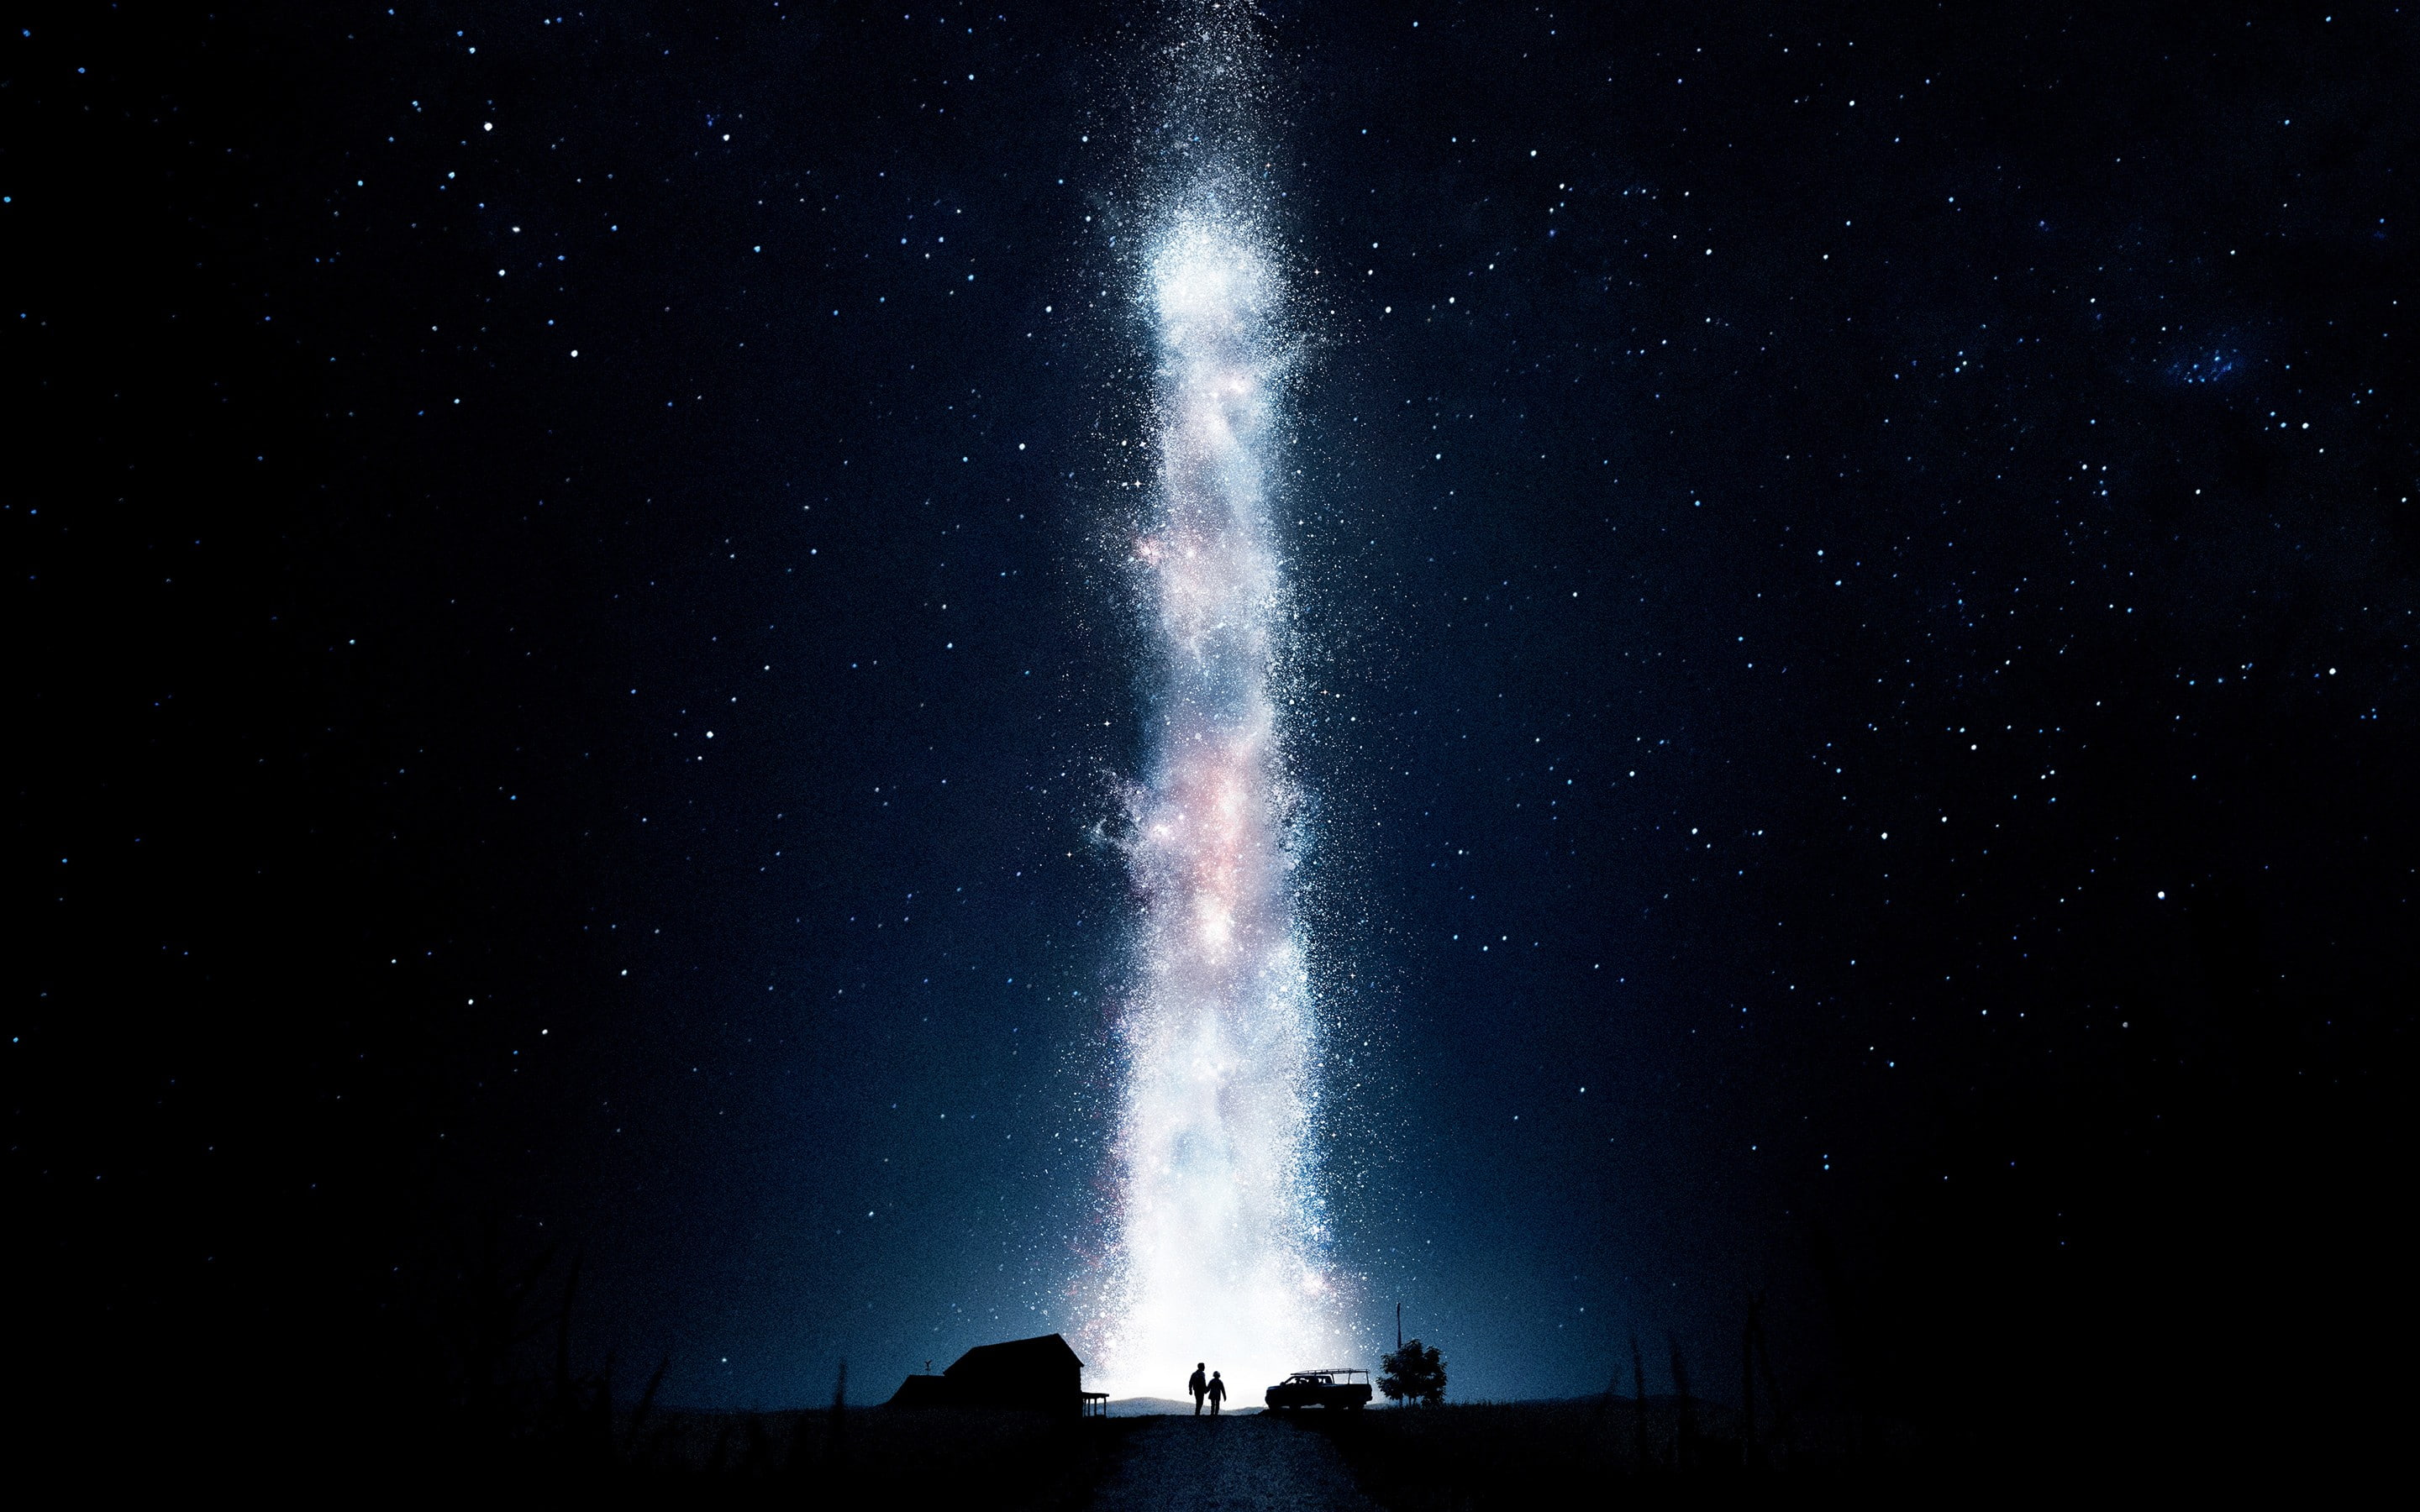 Interstellar (movie), movies, night, space, stars, sky